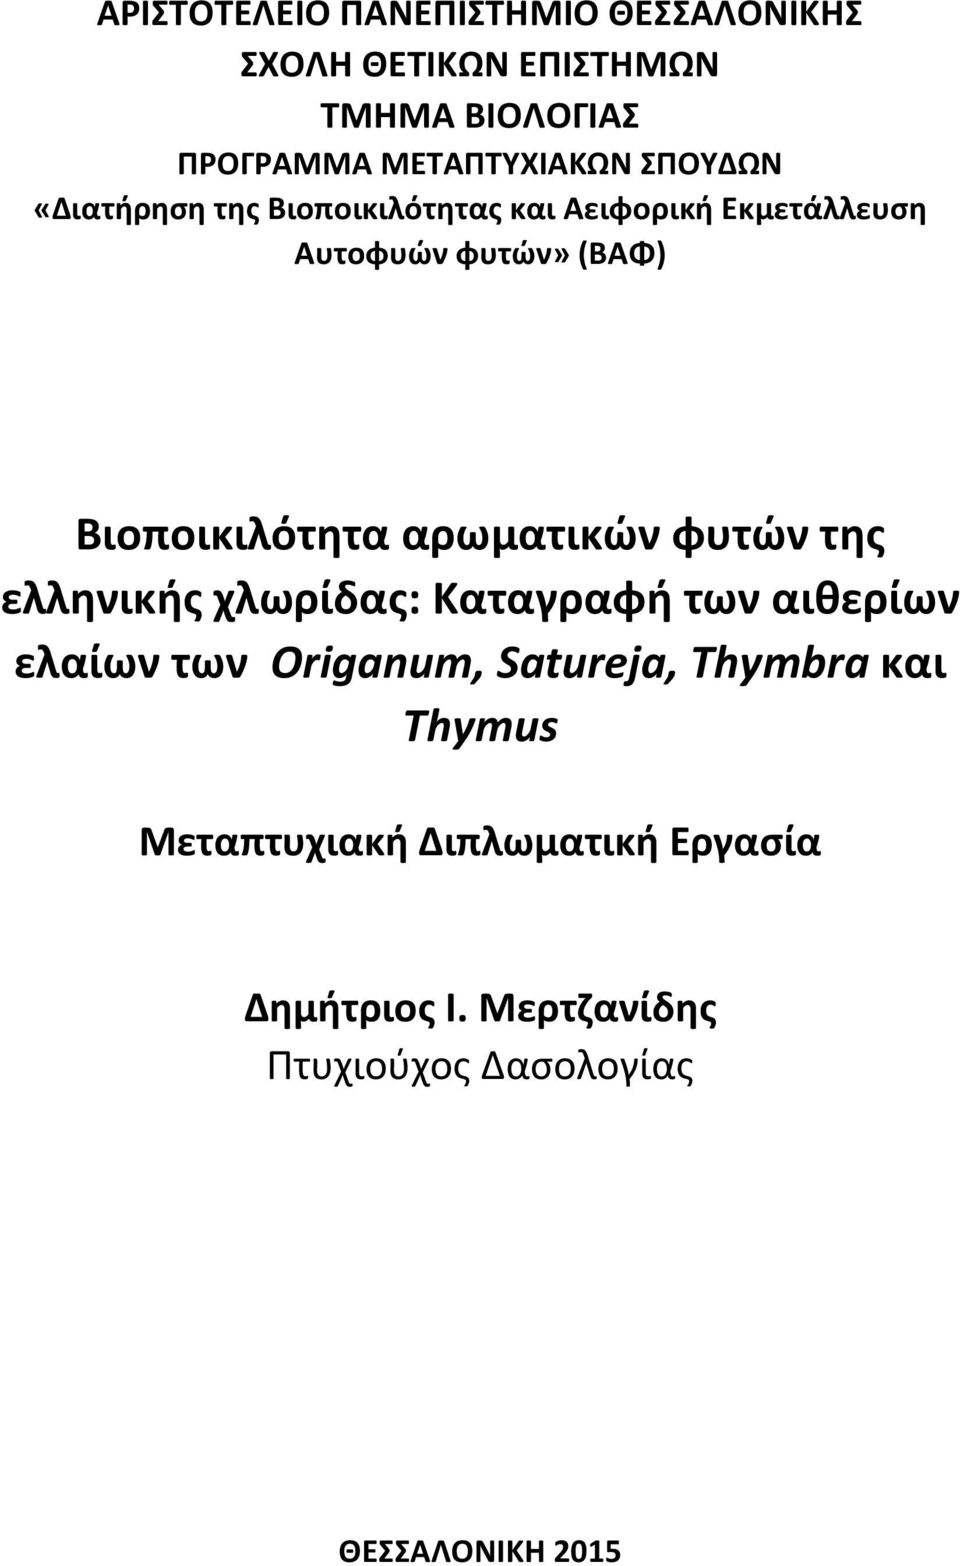 αρωματικών φυτών της ελληνικής χλωρίδας: Καταγραφή των αιθερίων ελαίων των Origanum, Satureja, Τhymbra